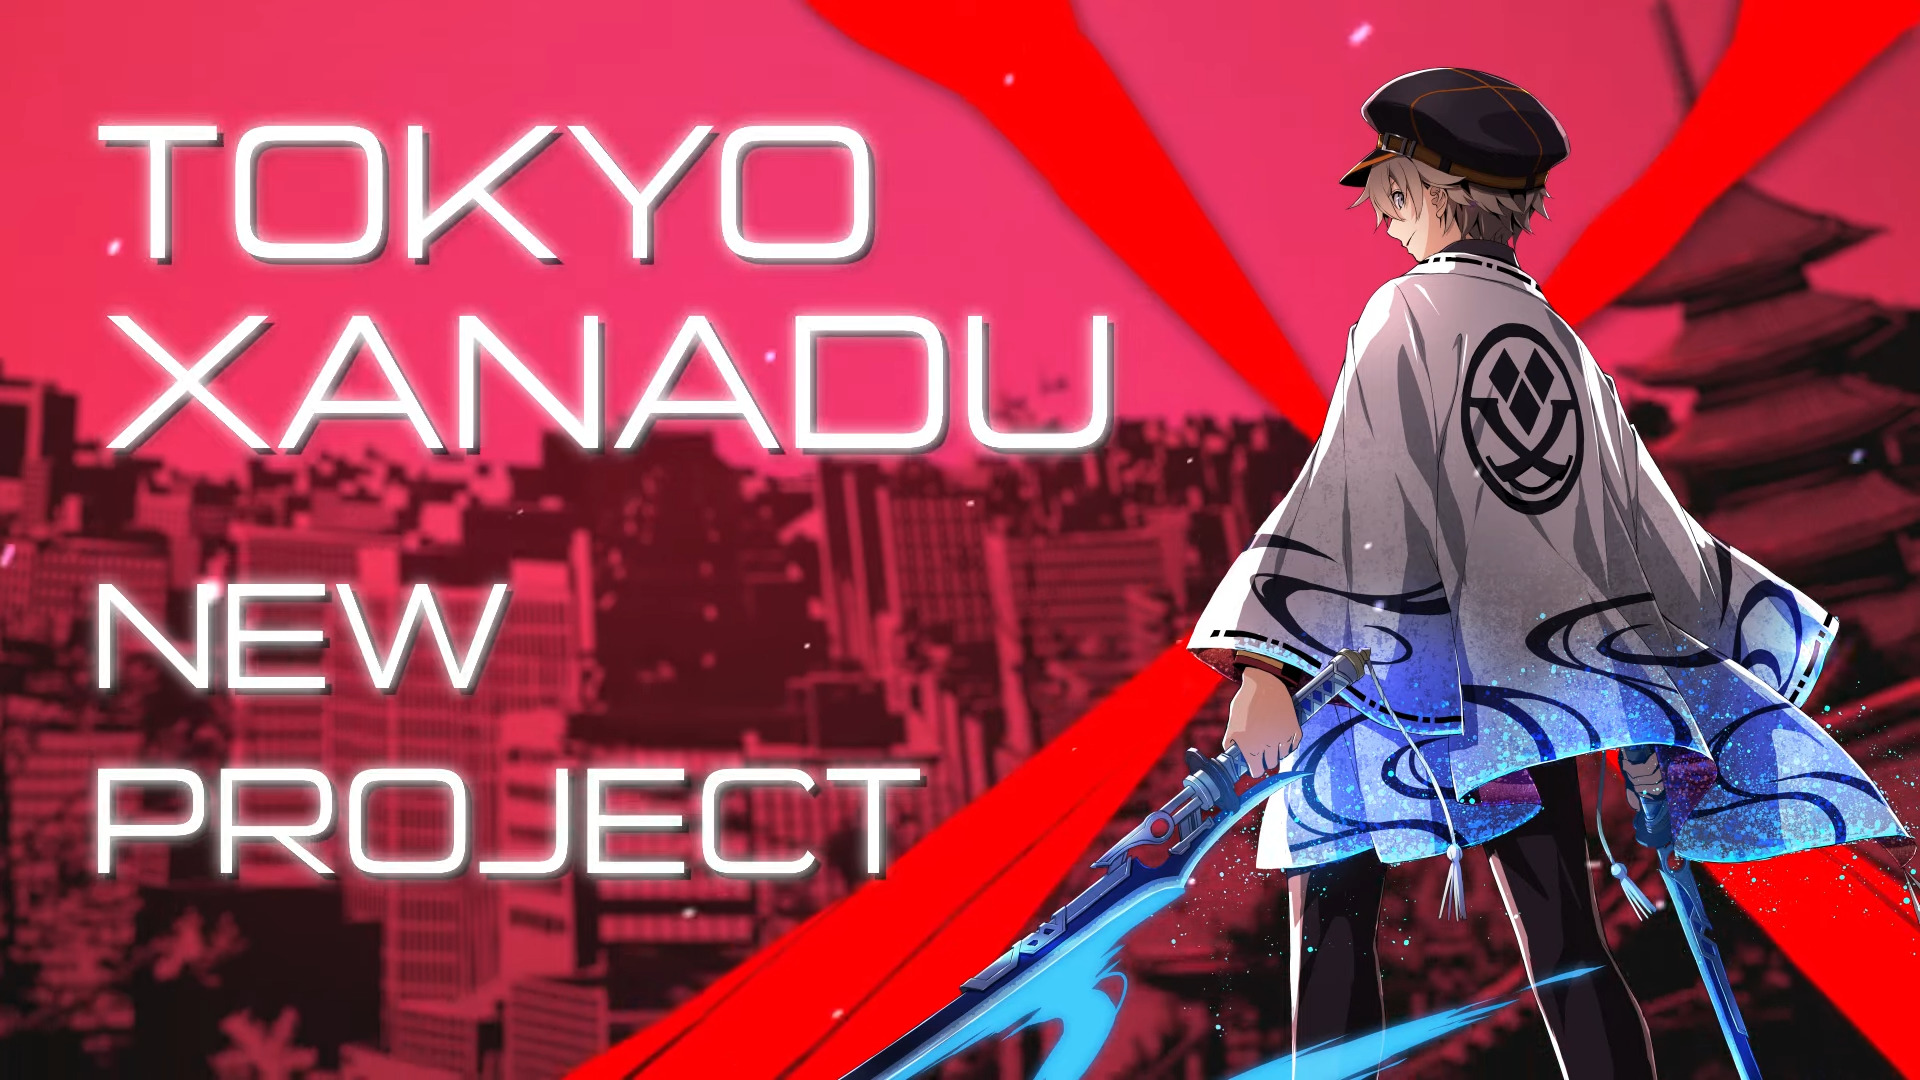 Lo studio Falcom annuncia il nuovo progetto Tokyo Xanadu